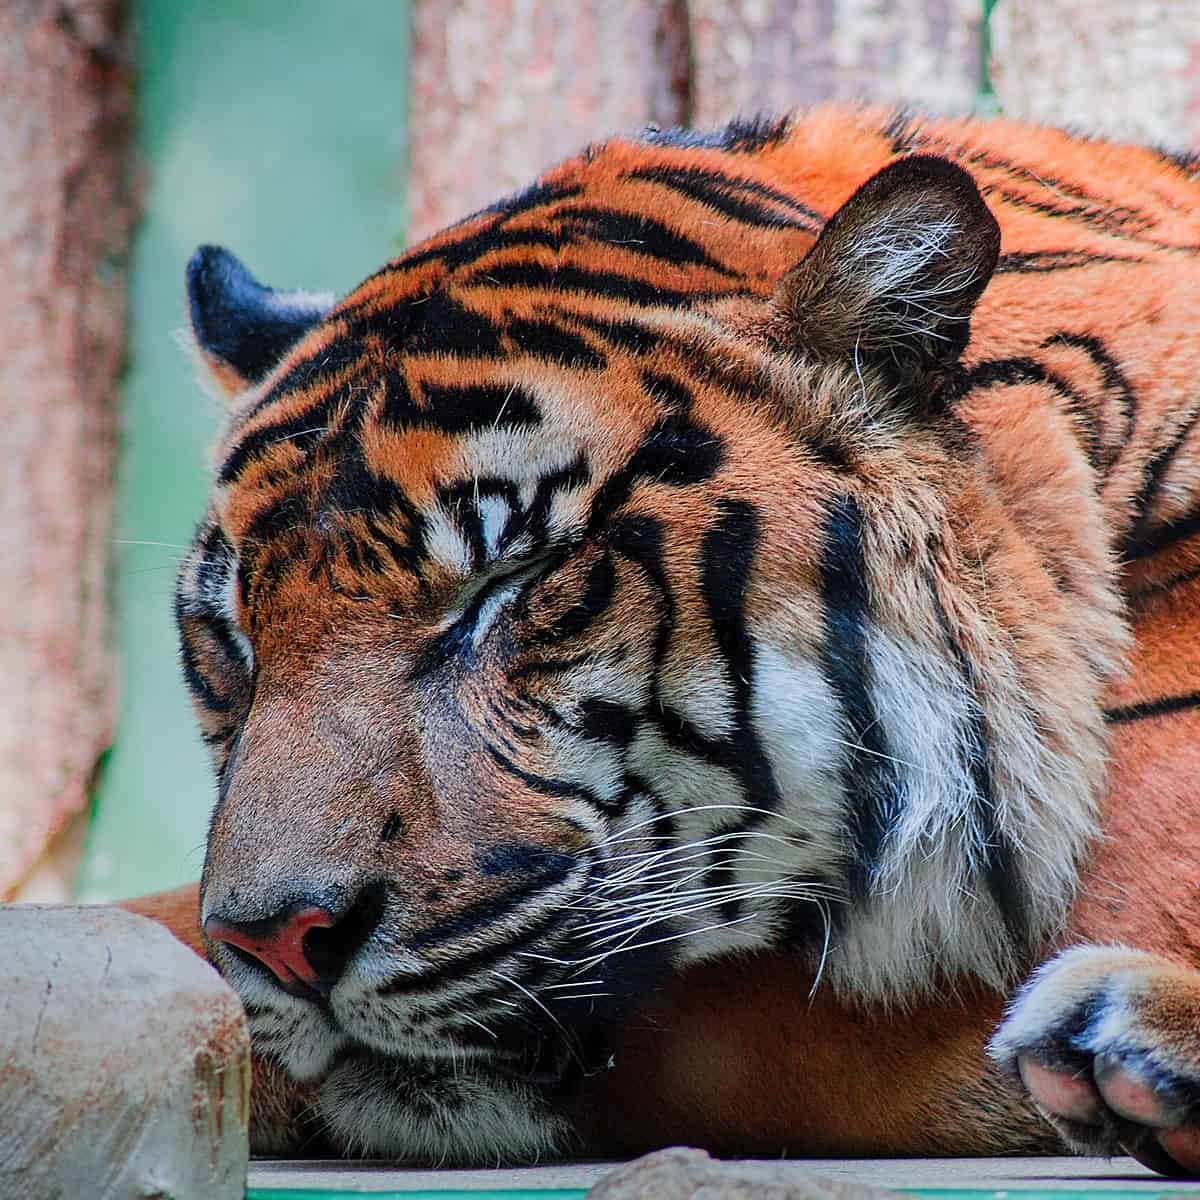 Nacen tres tigres de Bengala en el zoológico de Ciudad Aldama en Chihuahua